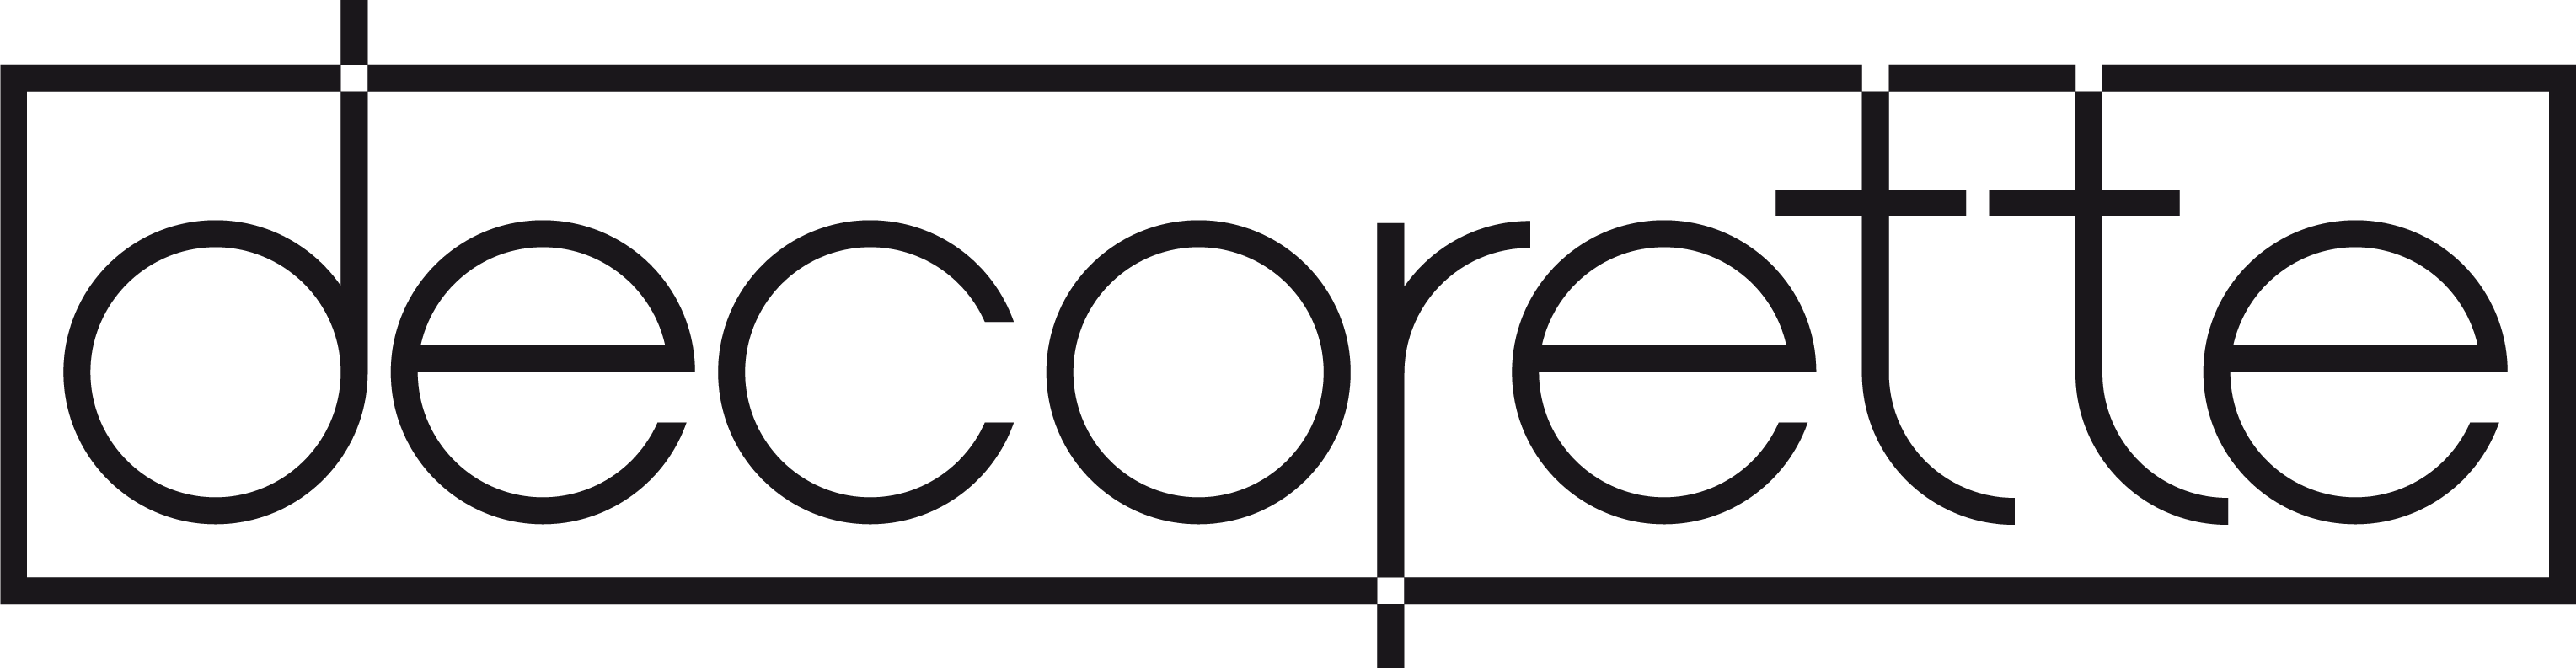 Logo Decorette Drok